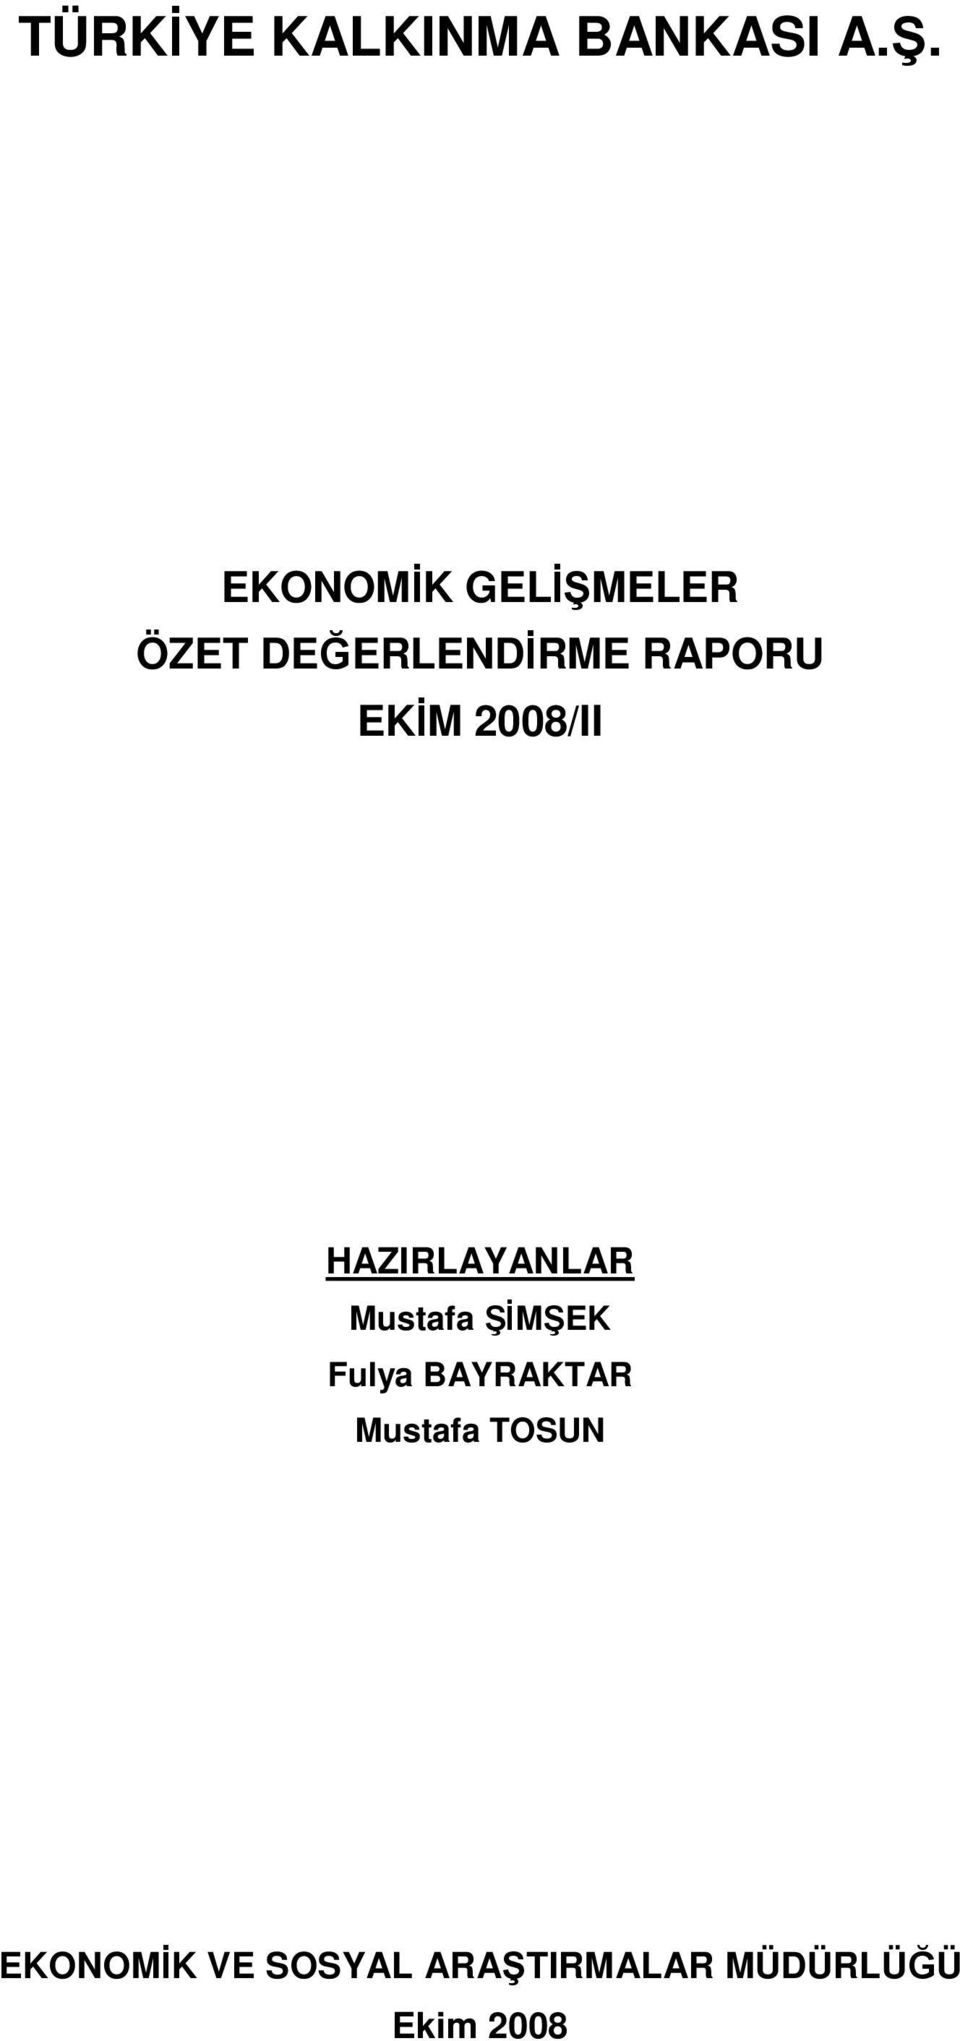 EKİM 2008/II HAZIRLAYANLAR Mustafa ŞİMŞEK Fulya